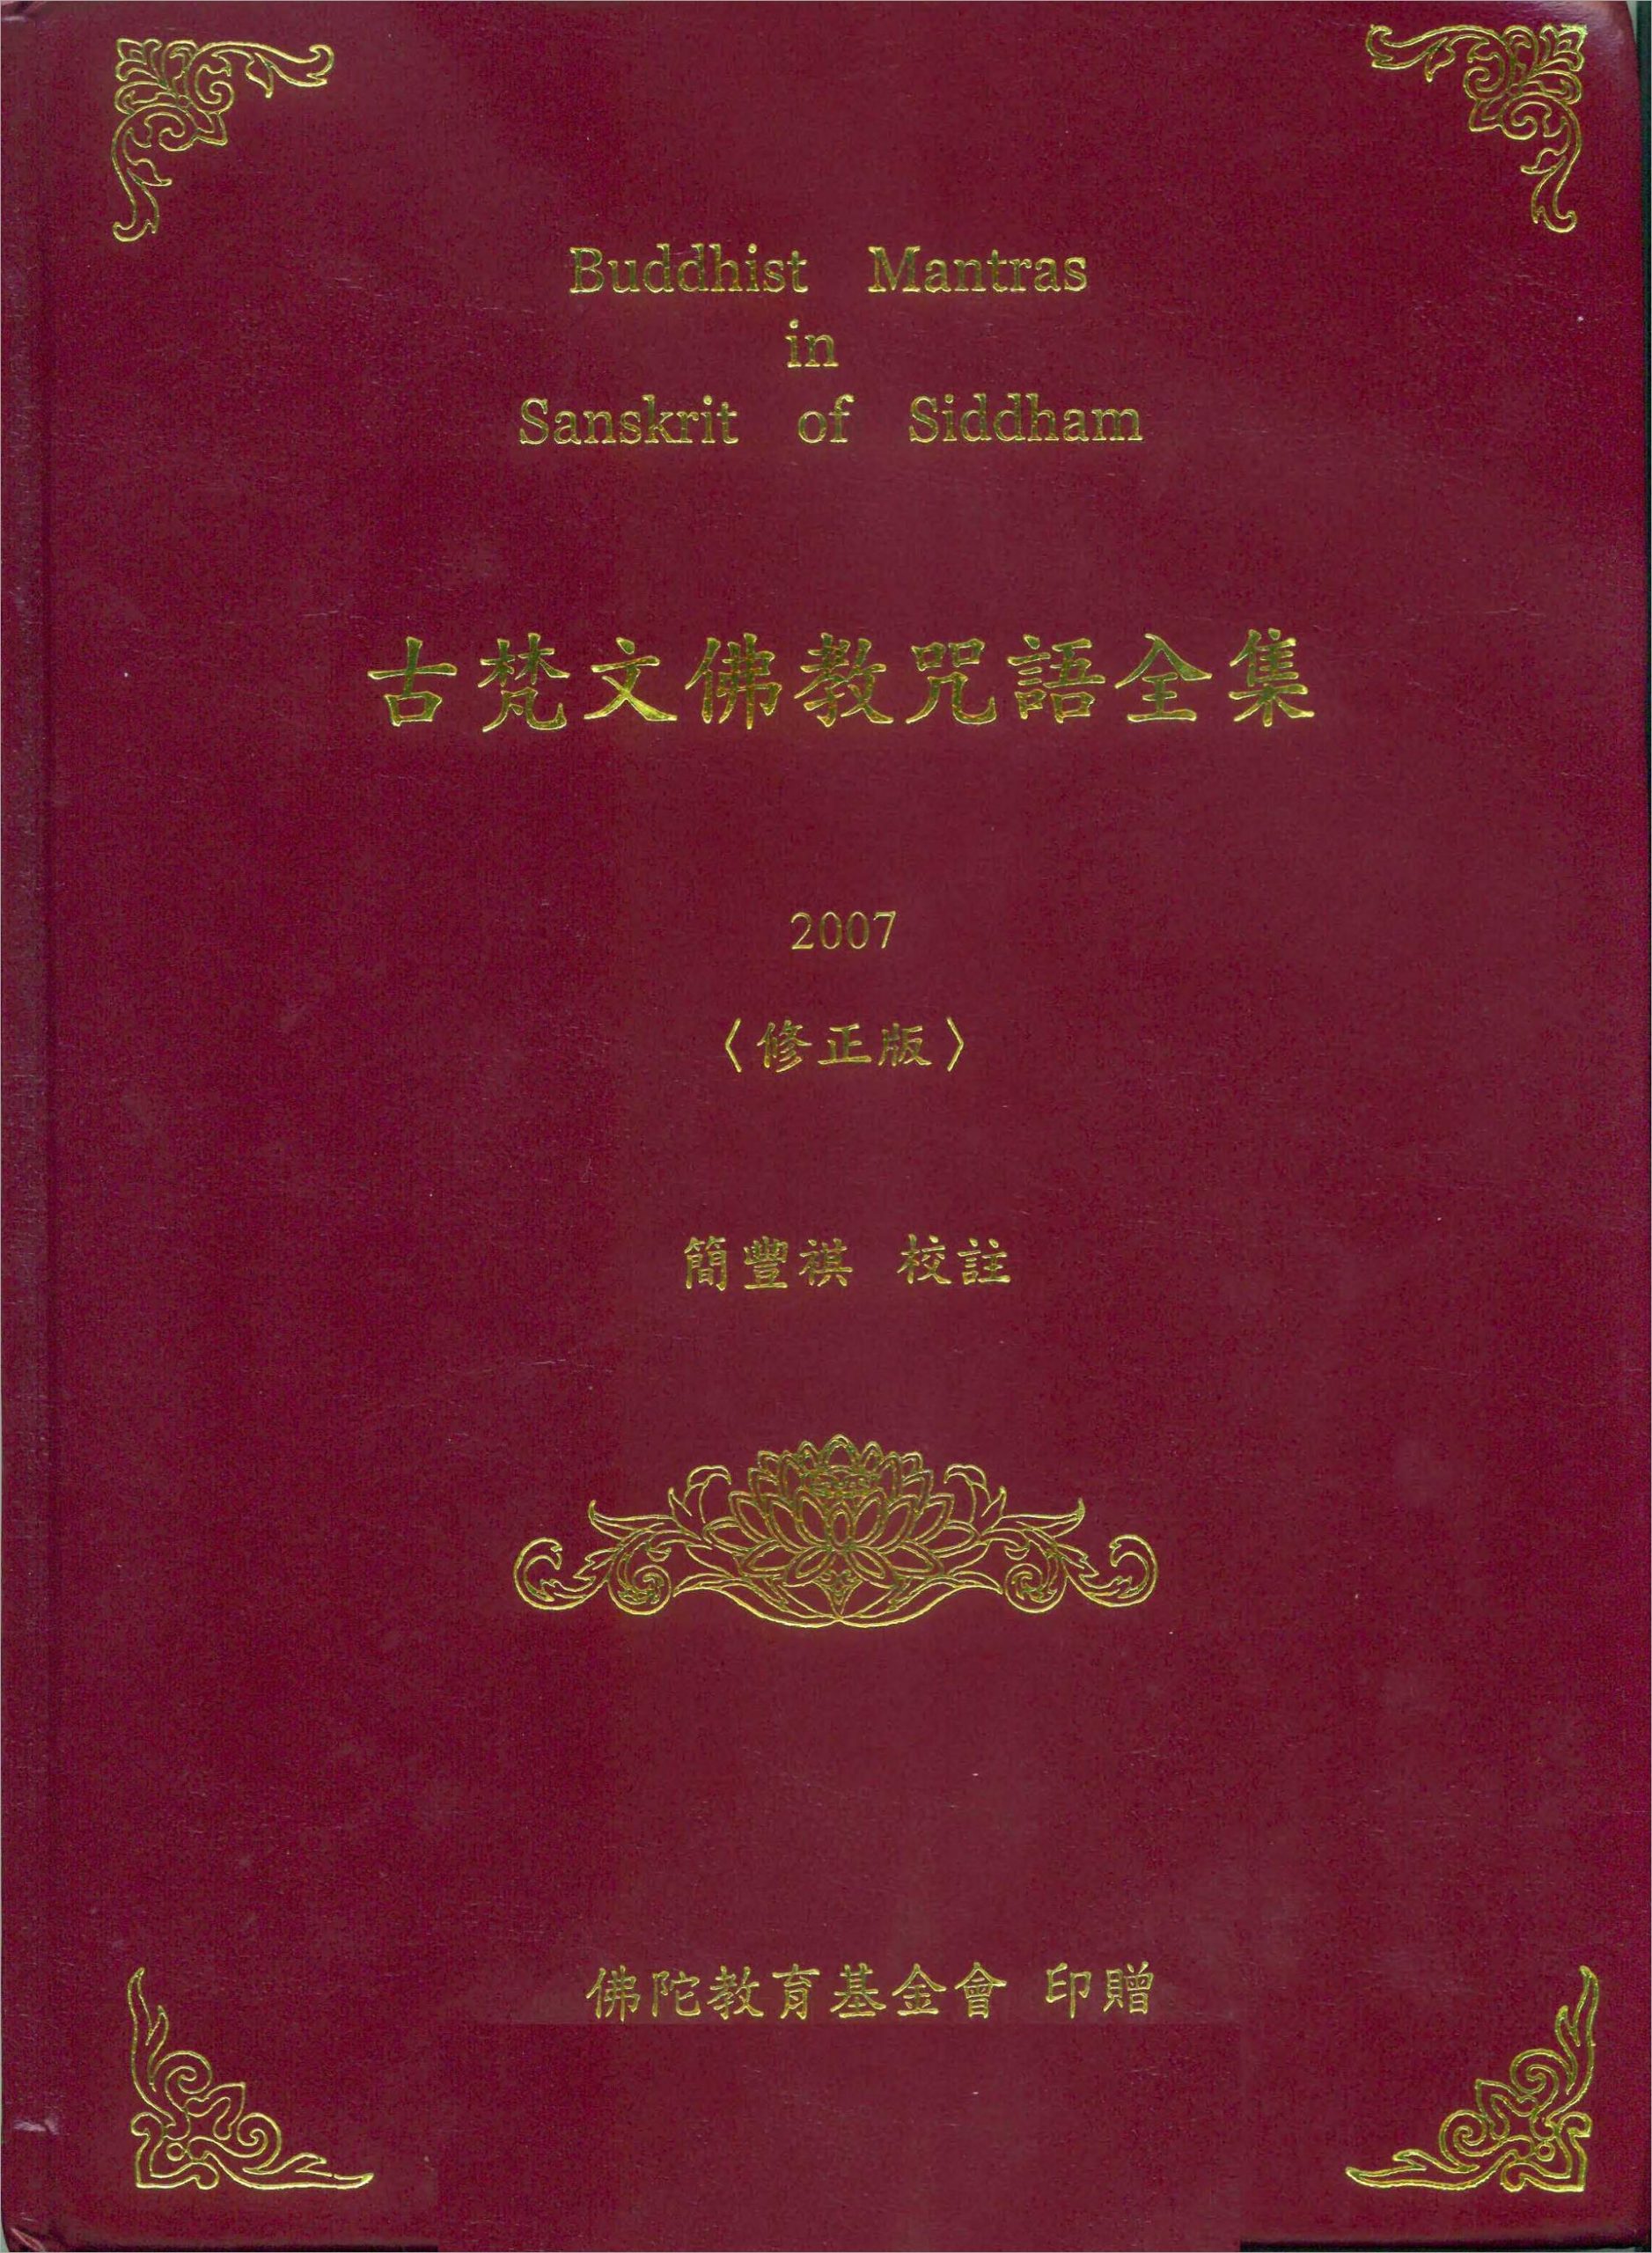 古梵文佛教咒语全集(简丰祺校注)(1)  .pdf